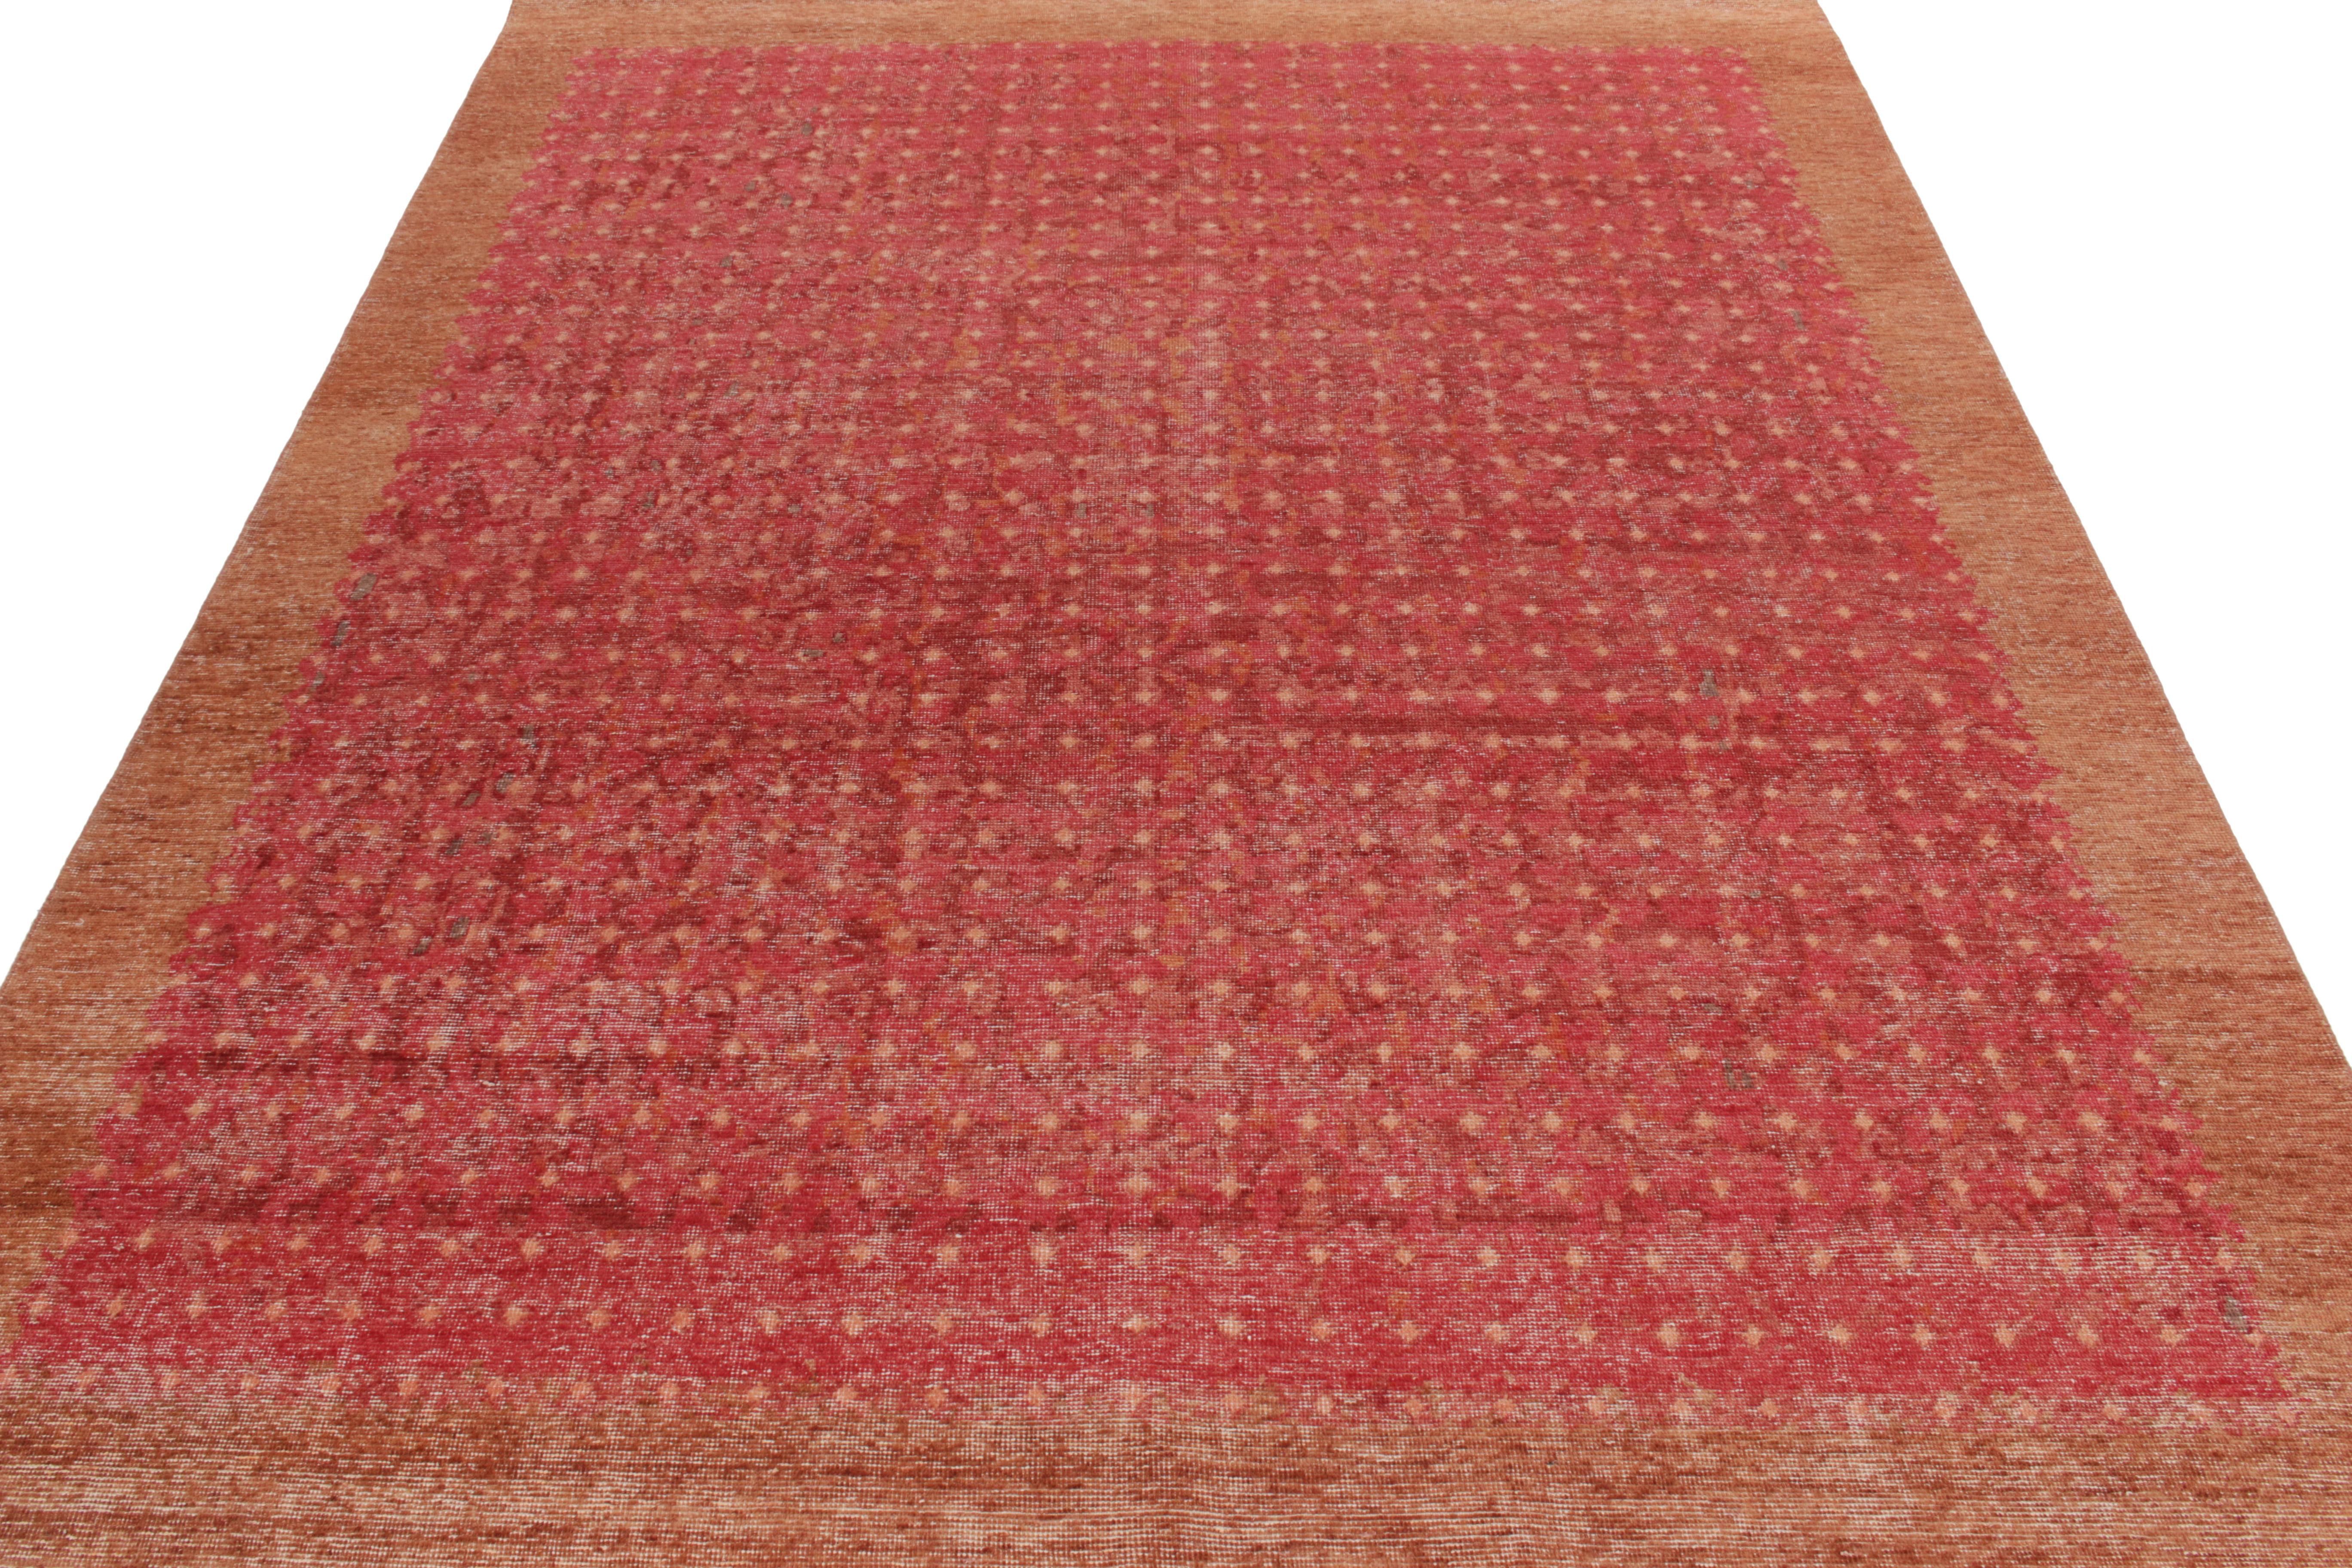 Dieser moderne Teppich im Format 9x12 repräsentiert das vielfältige Archiv kultureller Muster, die in der Homage Collection von Rug & Kilim wieder aufgegriffen wurden. Er ist bequem gewaschen und erhält dadurch die Ästhetik des Shabby-Chic, die für